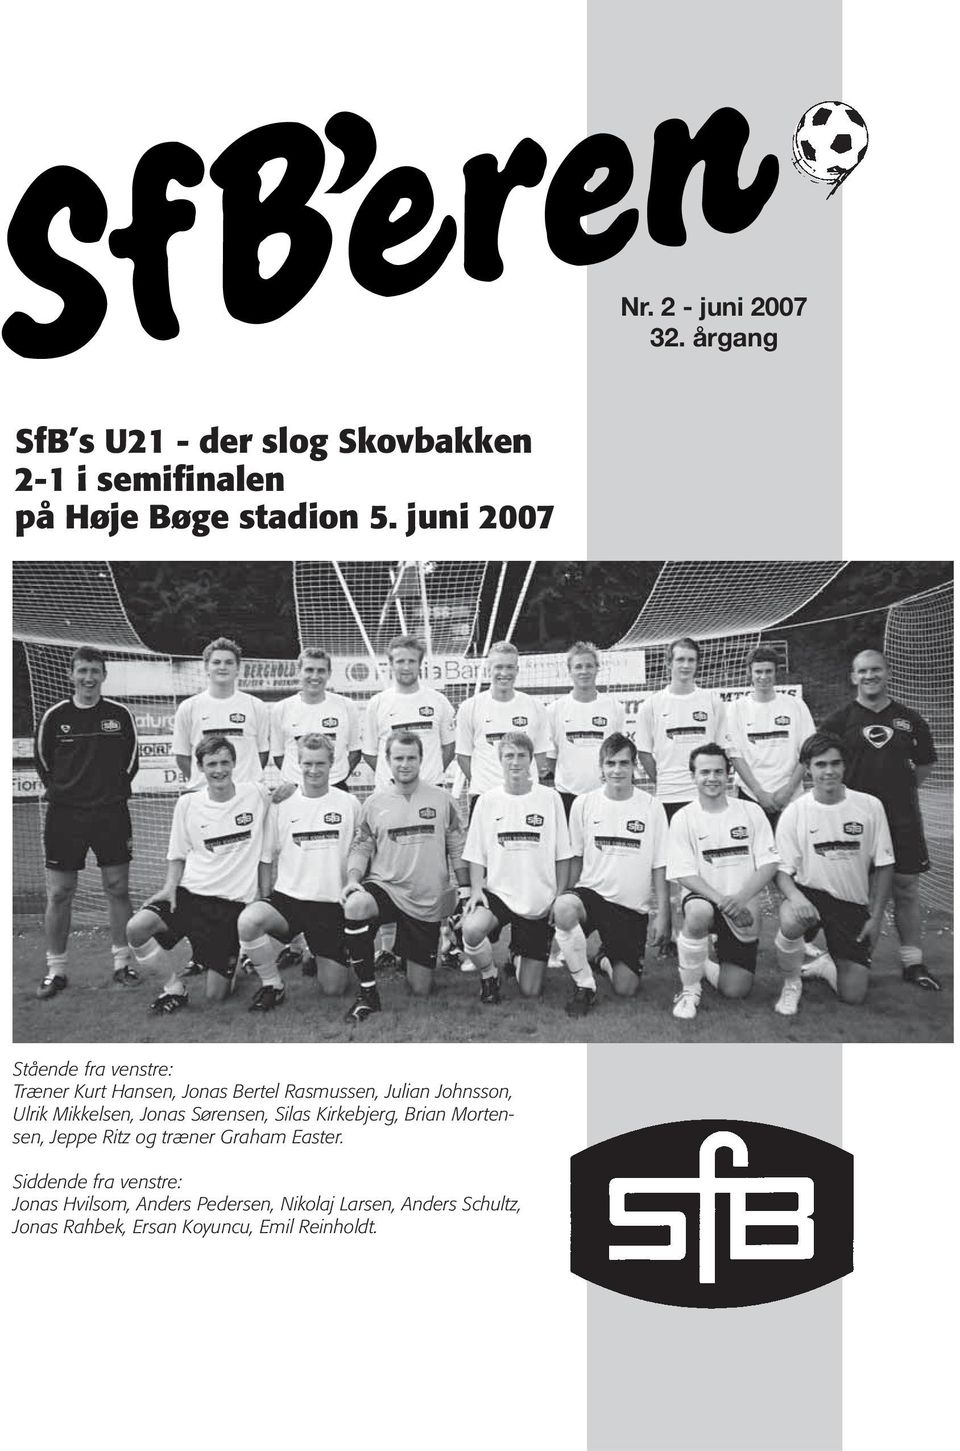 Mikkelsen, Jonas Sørensen, Silas Kirkebjerg, Brian Mortensen, Jeppe Ritz og træner Graham Easter.